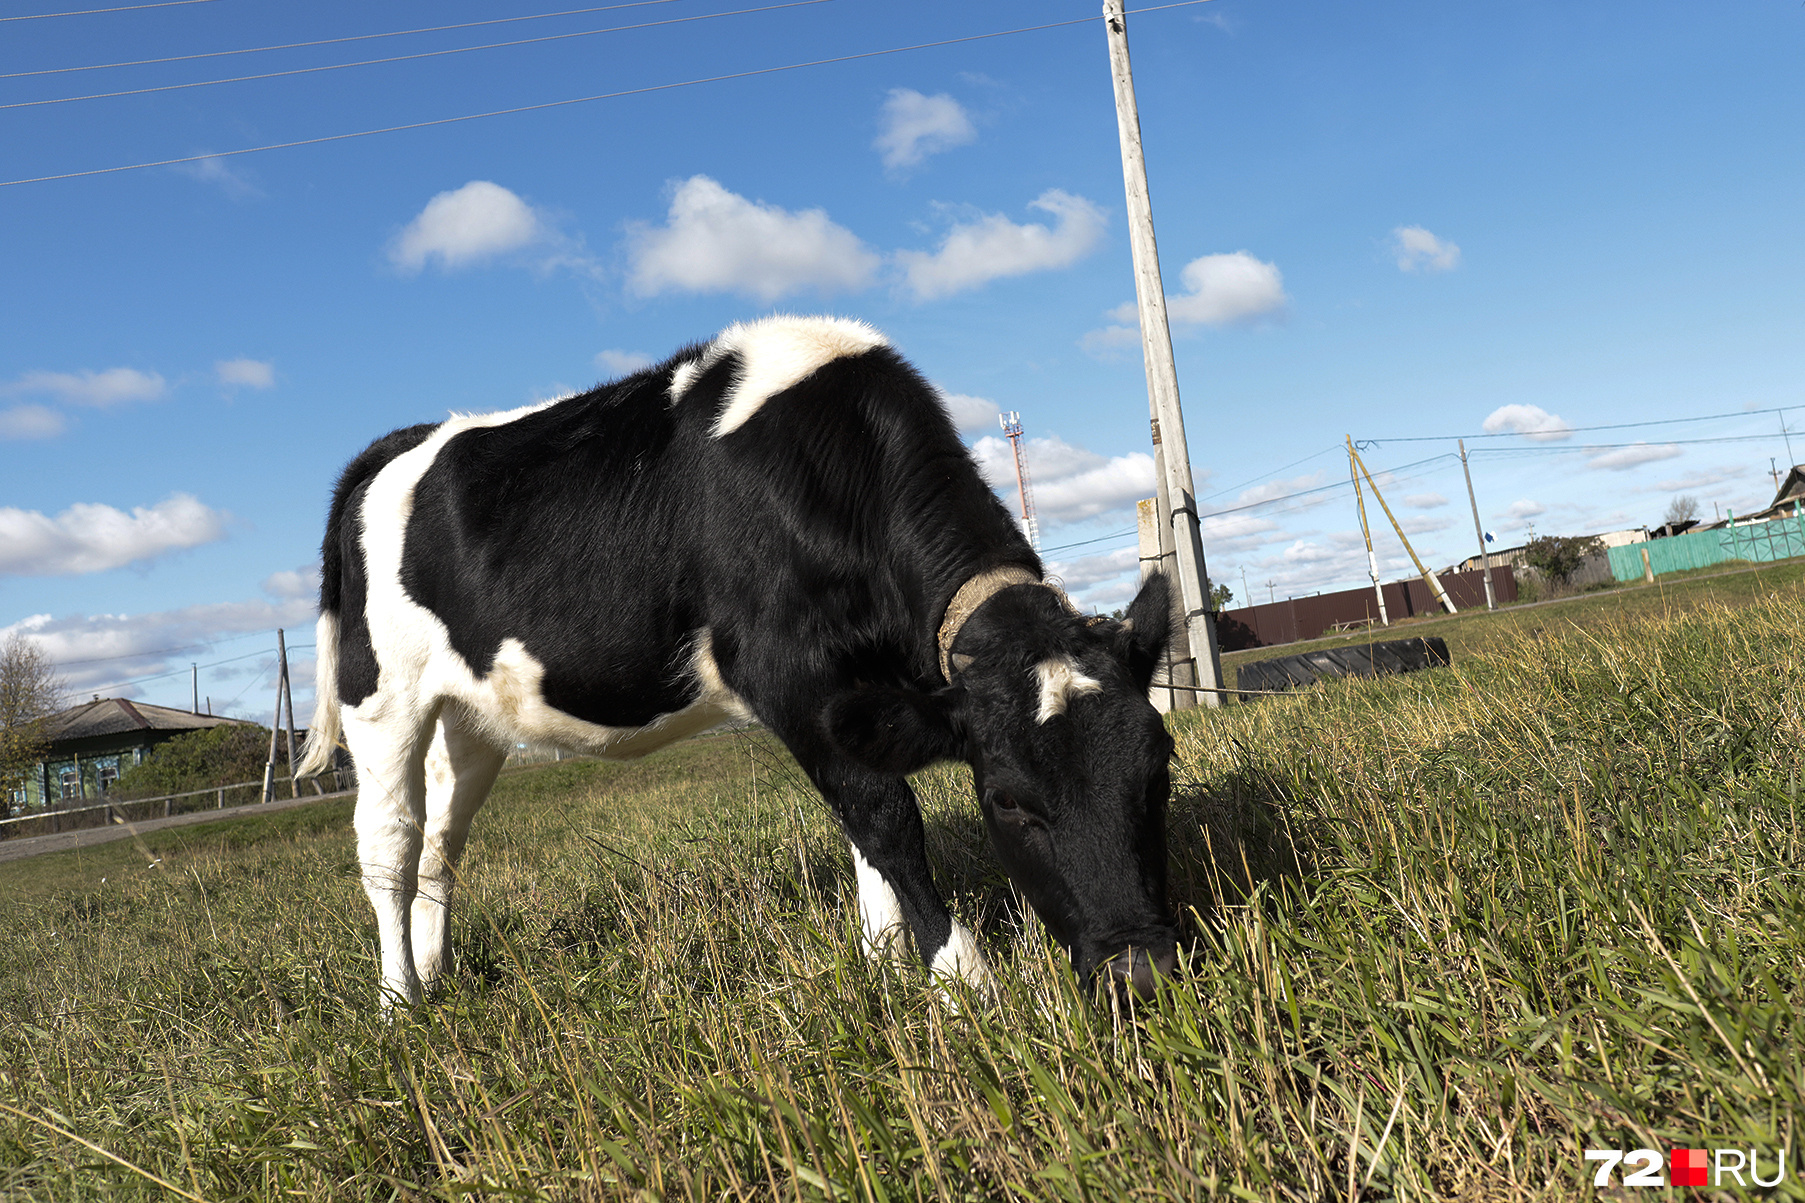 Местные жители запросто оставляют коров пастись самостоятельно, просто привязав их к любому столбу